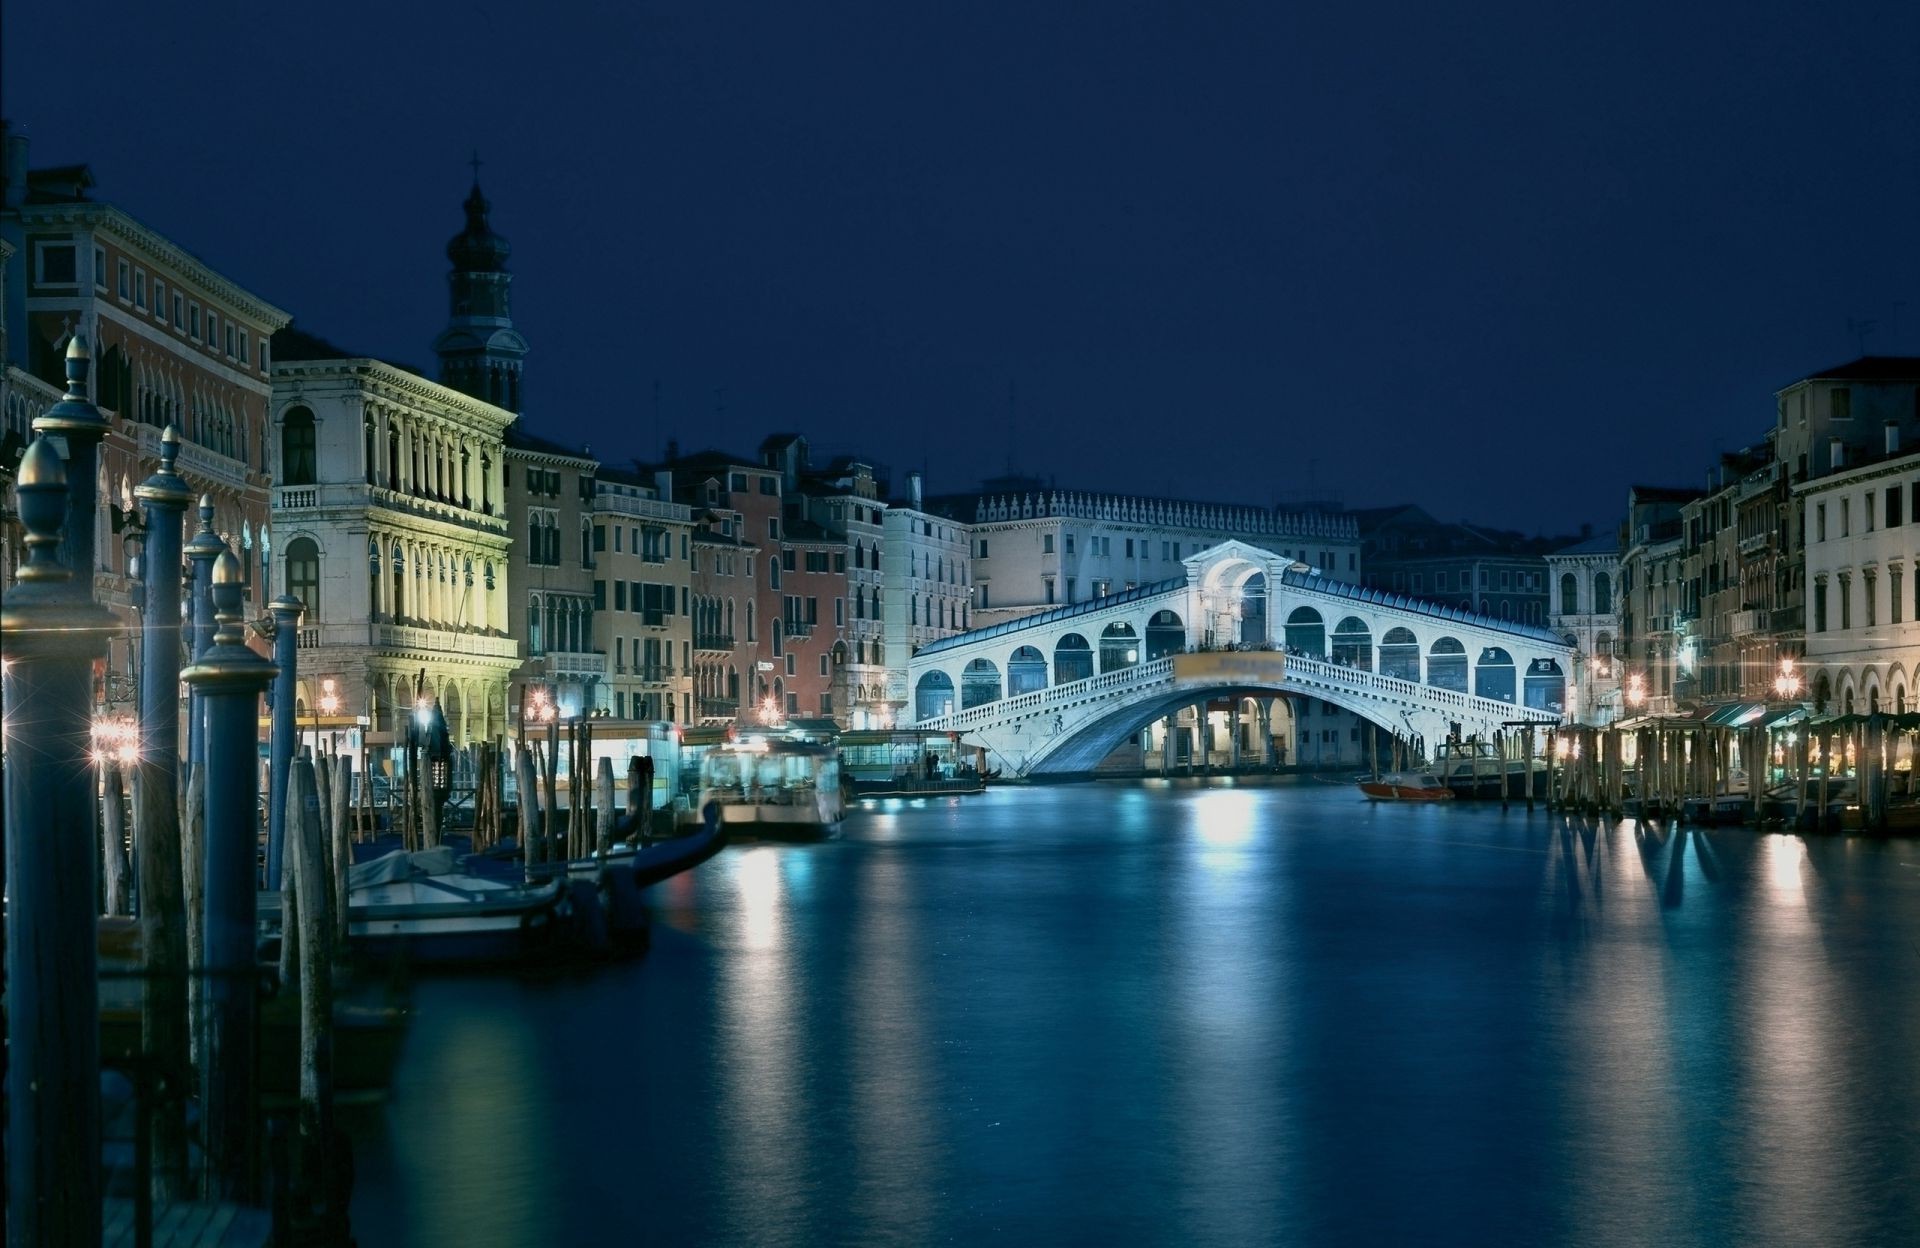 мосты воды архитектура канал путешествия мост город река дом отражение на открытом воздухе венецианец туризм сумрак небо гондолы